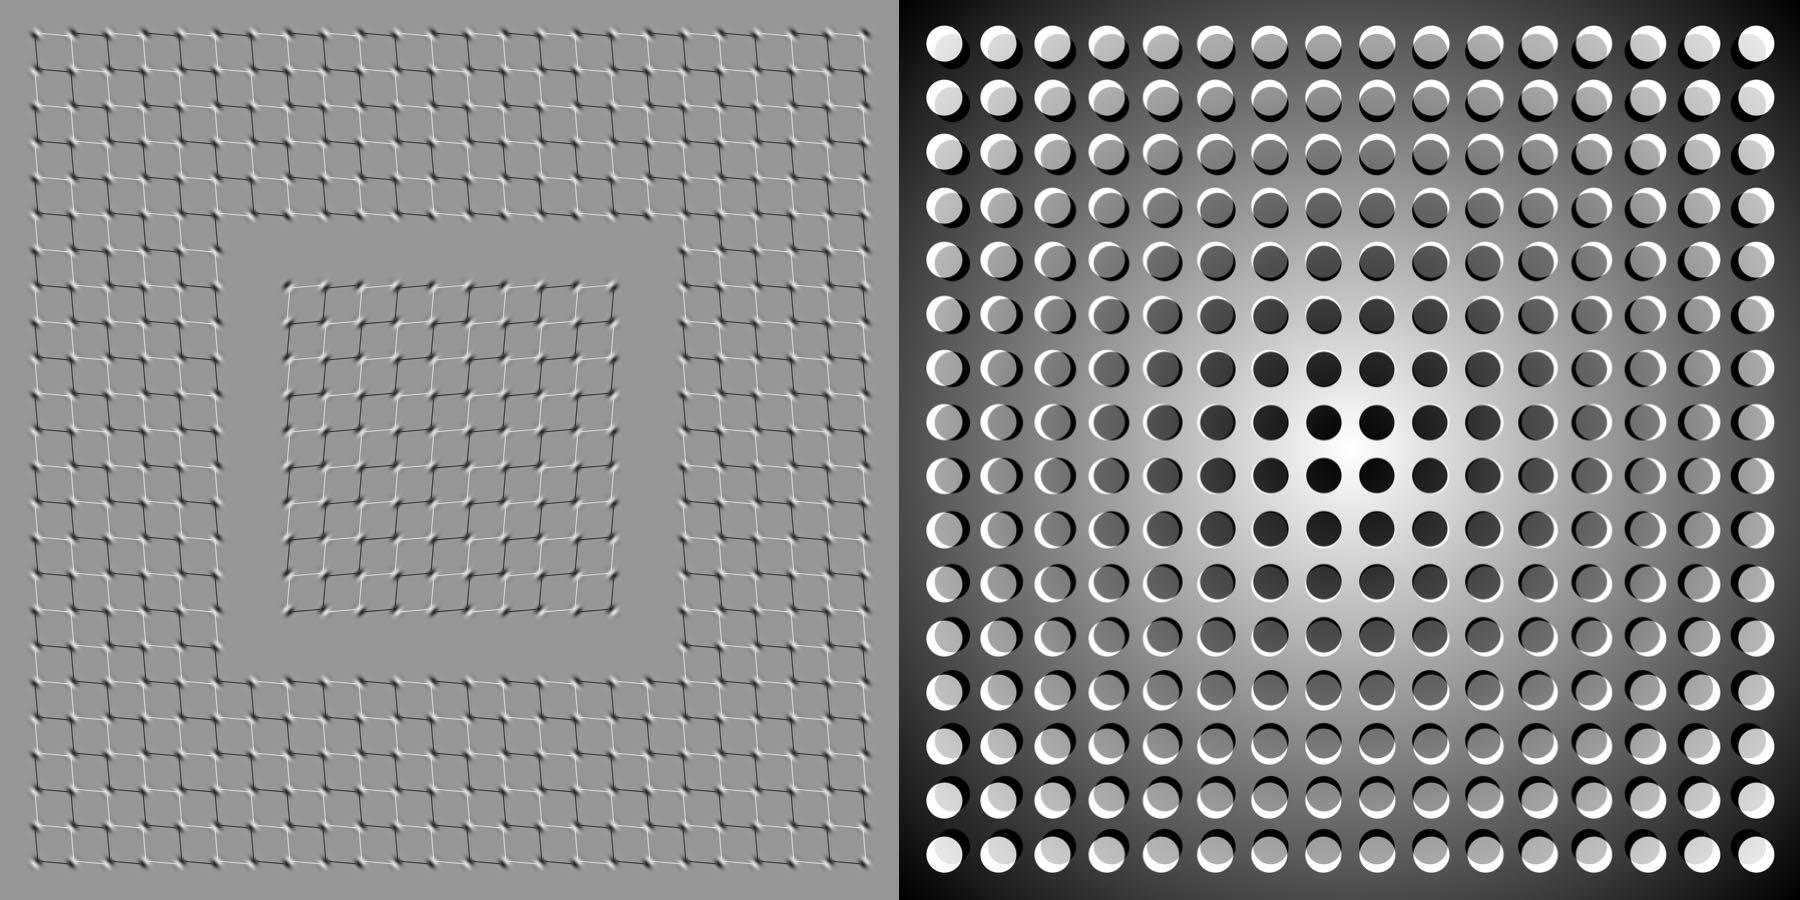 Кстати, подобные оптические иллюзии работают как раз потому, что ваш мозг предсказывает движение, которого...не происходит